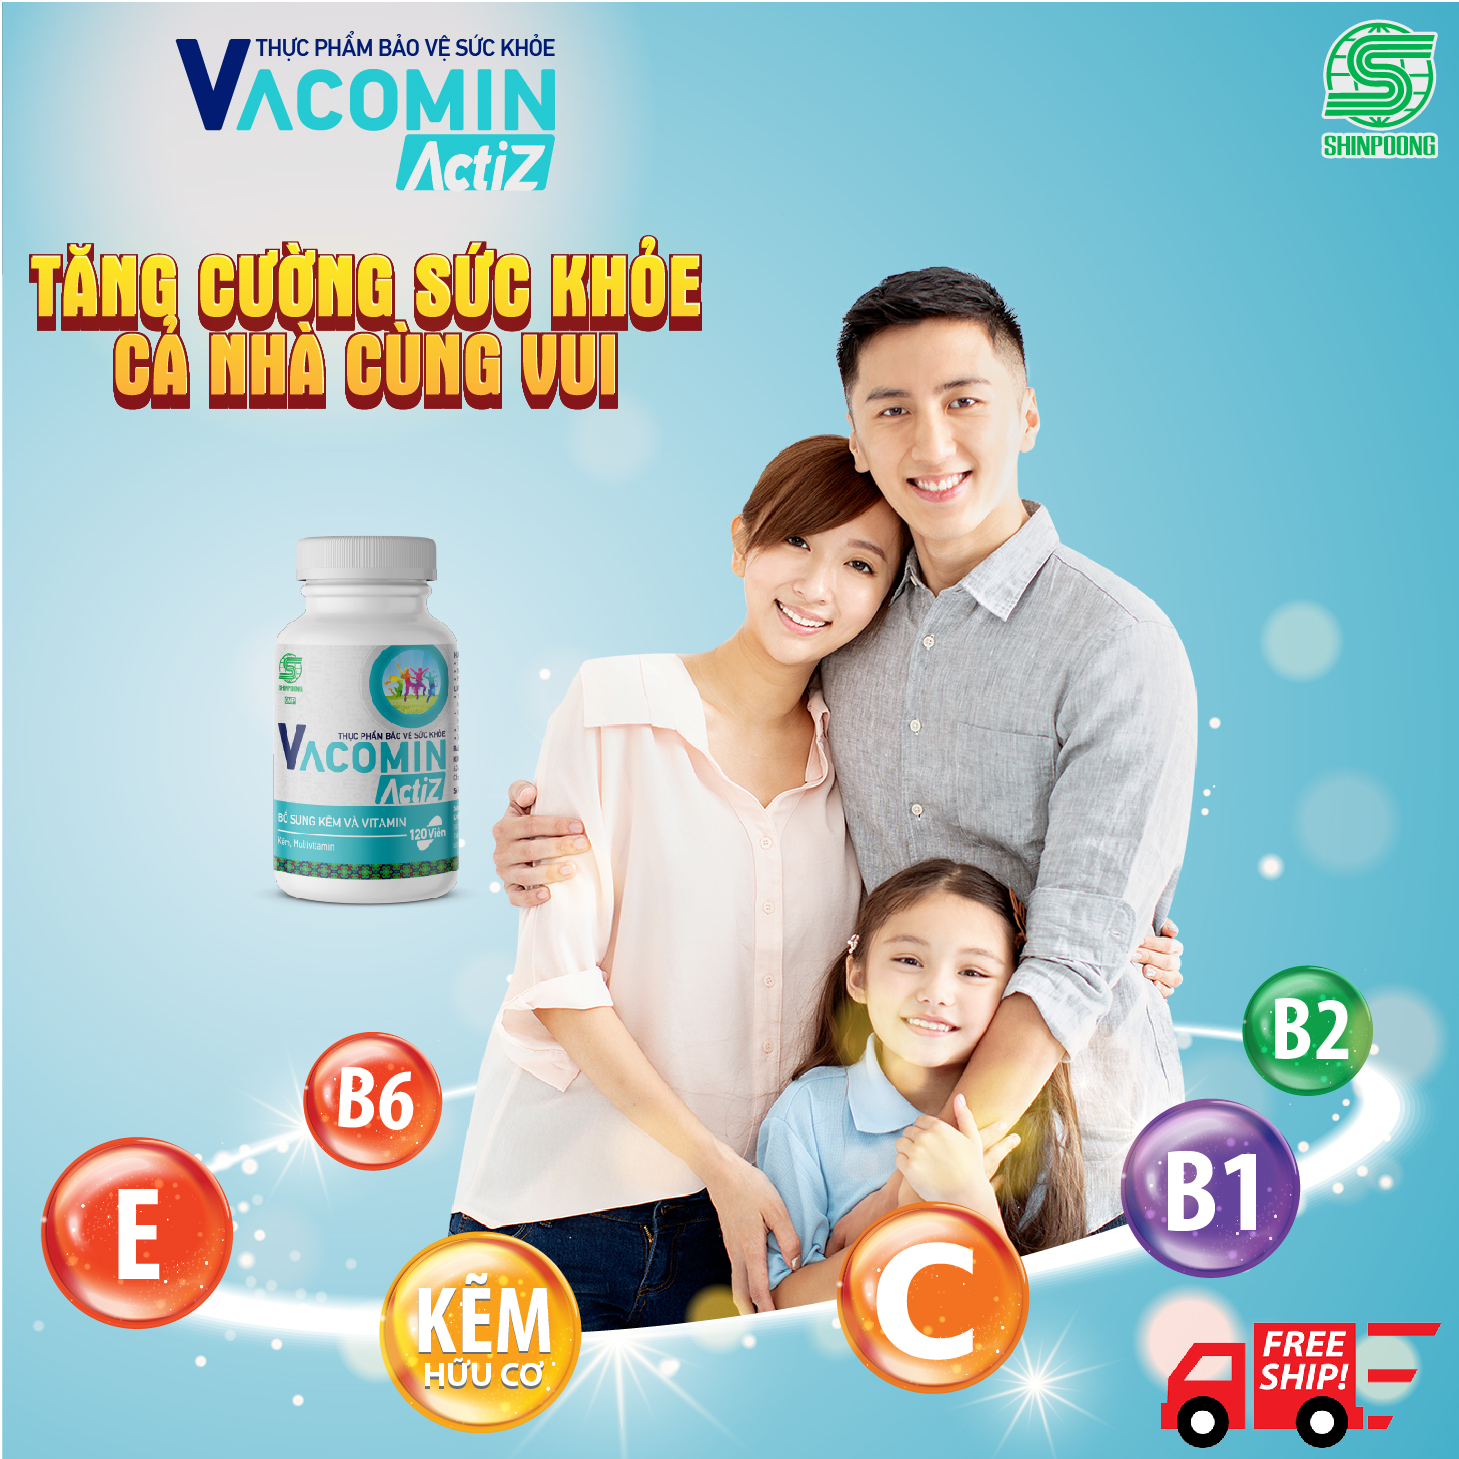 Thực Phẩm Bảo Vệ Sức Khỏe bổ sung vitamin tổng hợp, vitamin nhóm B, E, C và Kẽm hữu cơ Shinpoong Vacomin ActiZ - Hộp 60 viên